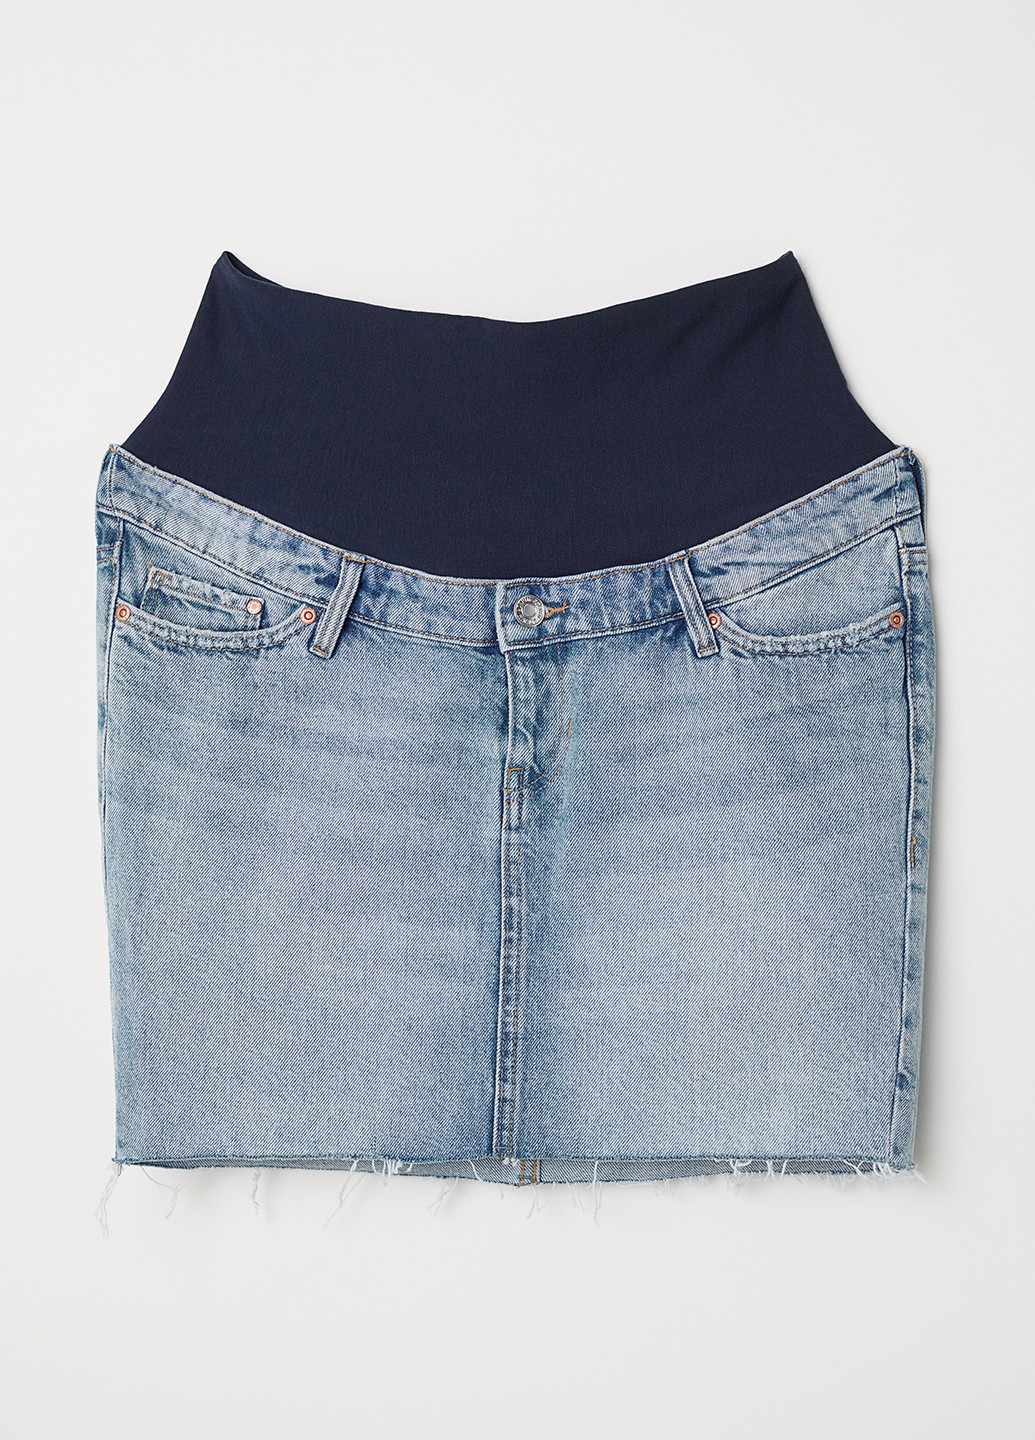 Голубая джинсовая юбка H&M карандаш